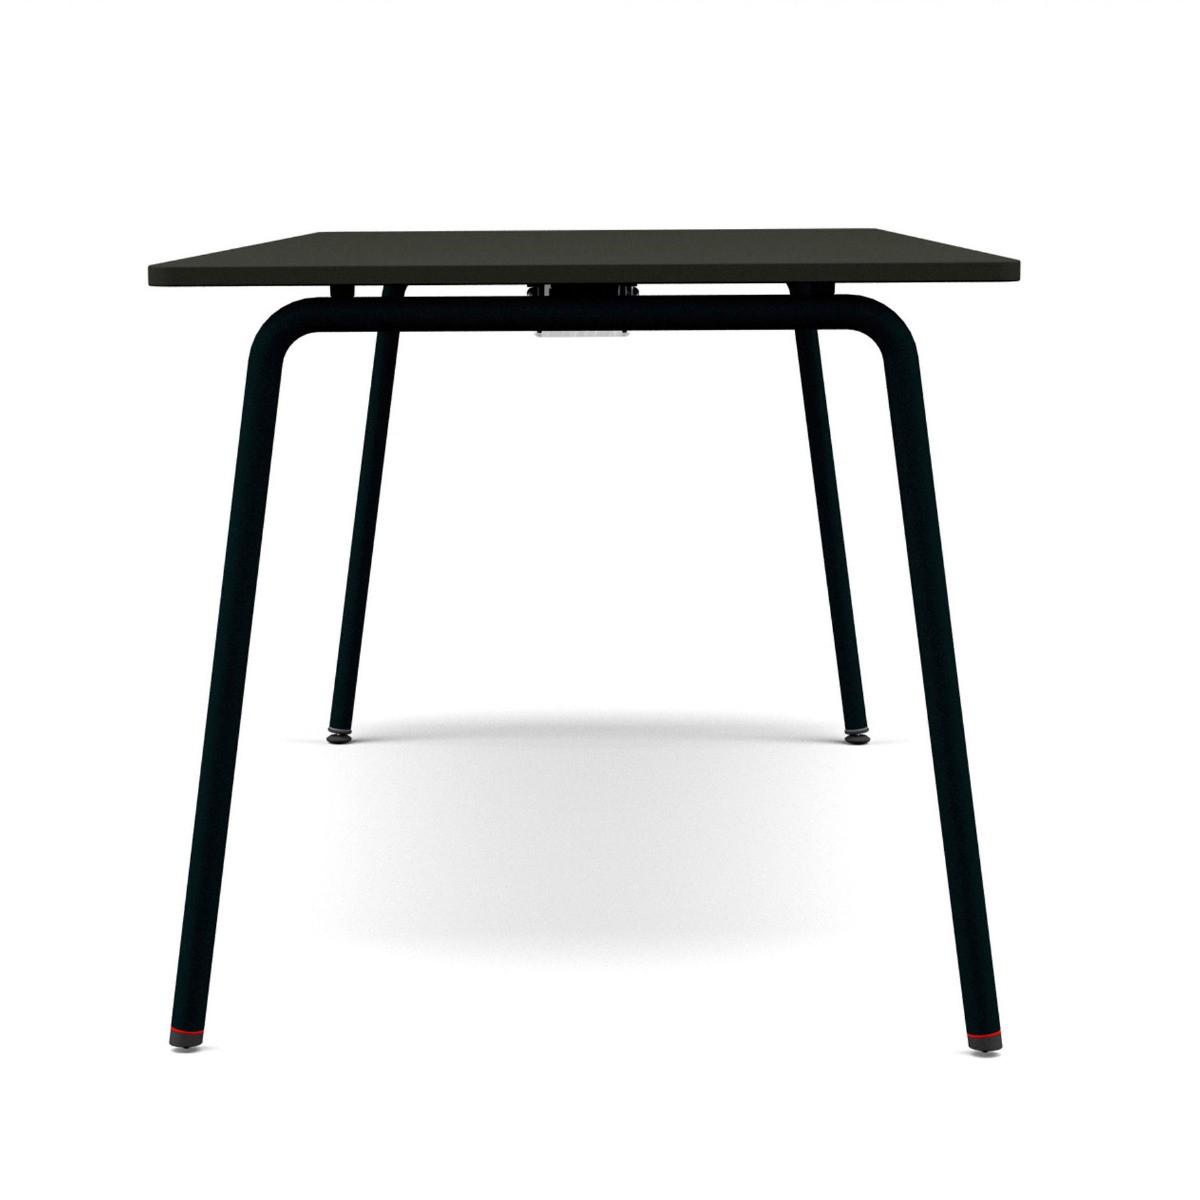 Table pliante Conférence - 120 x 80 cm - Melamine Forme et couleur